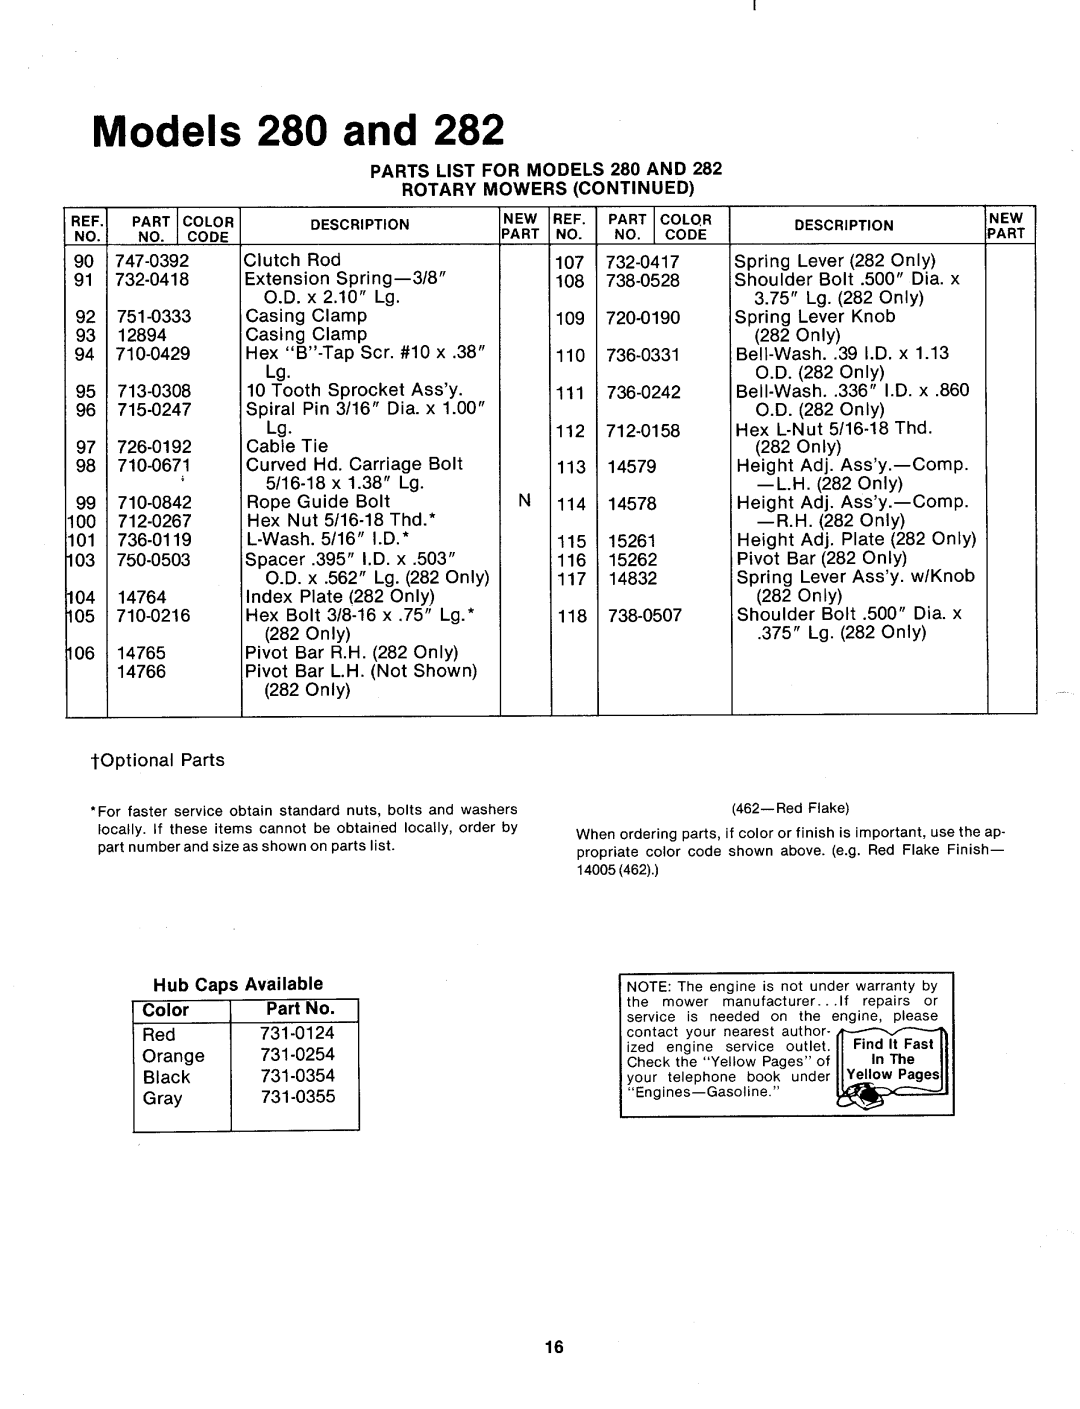 MTD 123-280A, 123-282A manual 